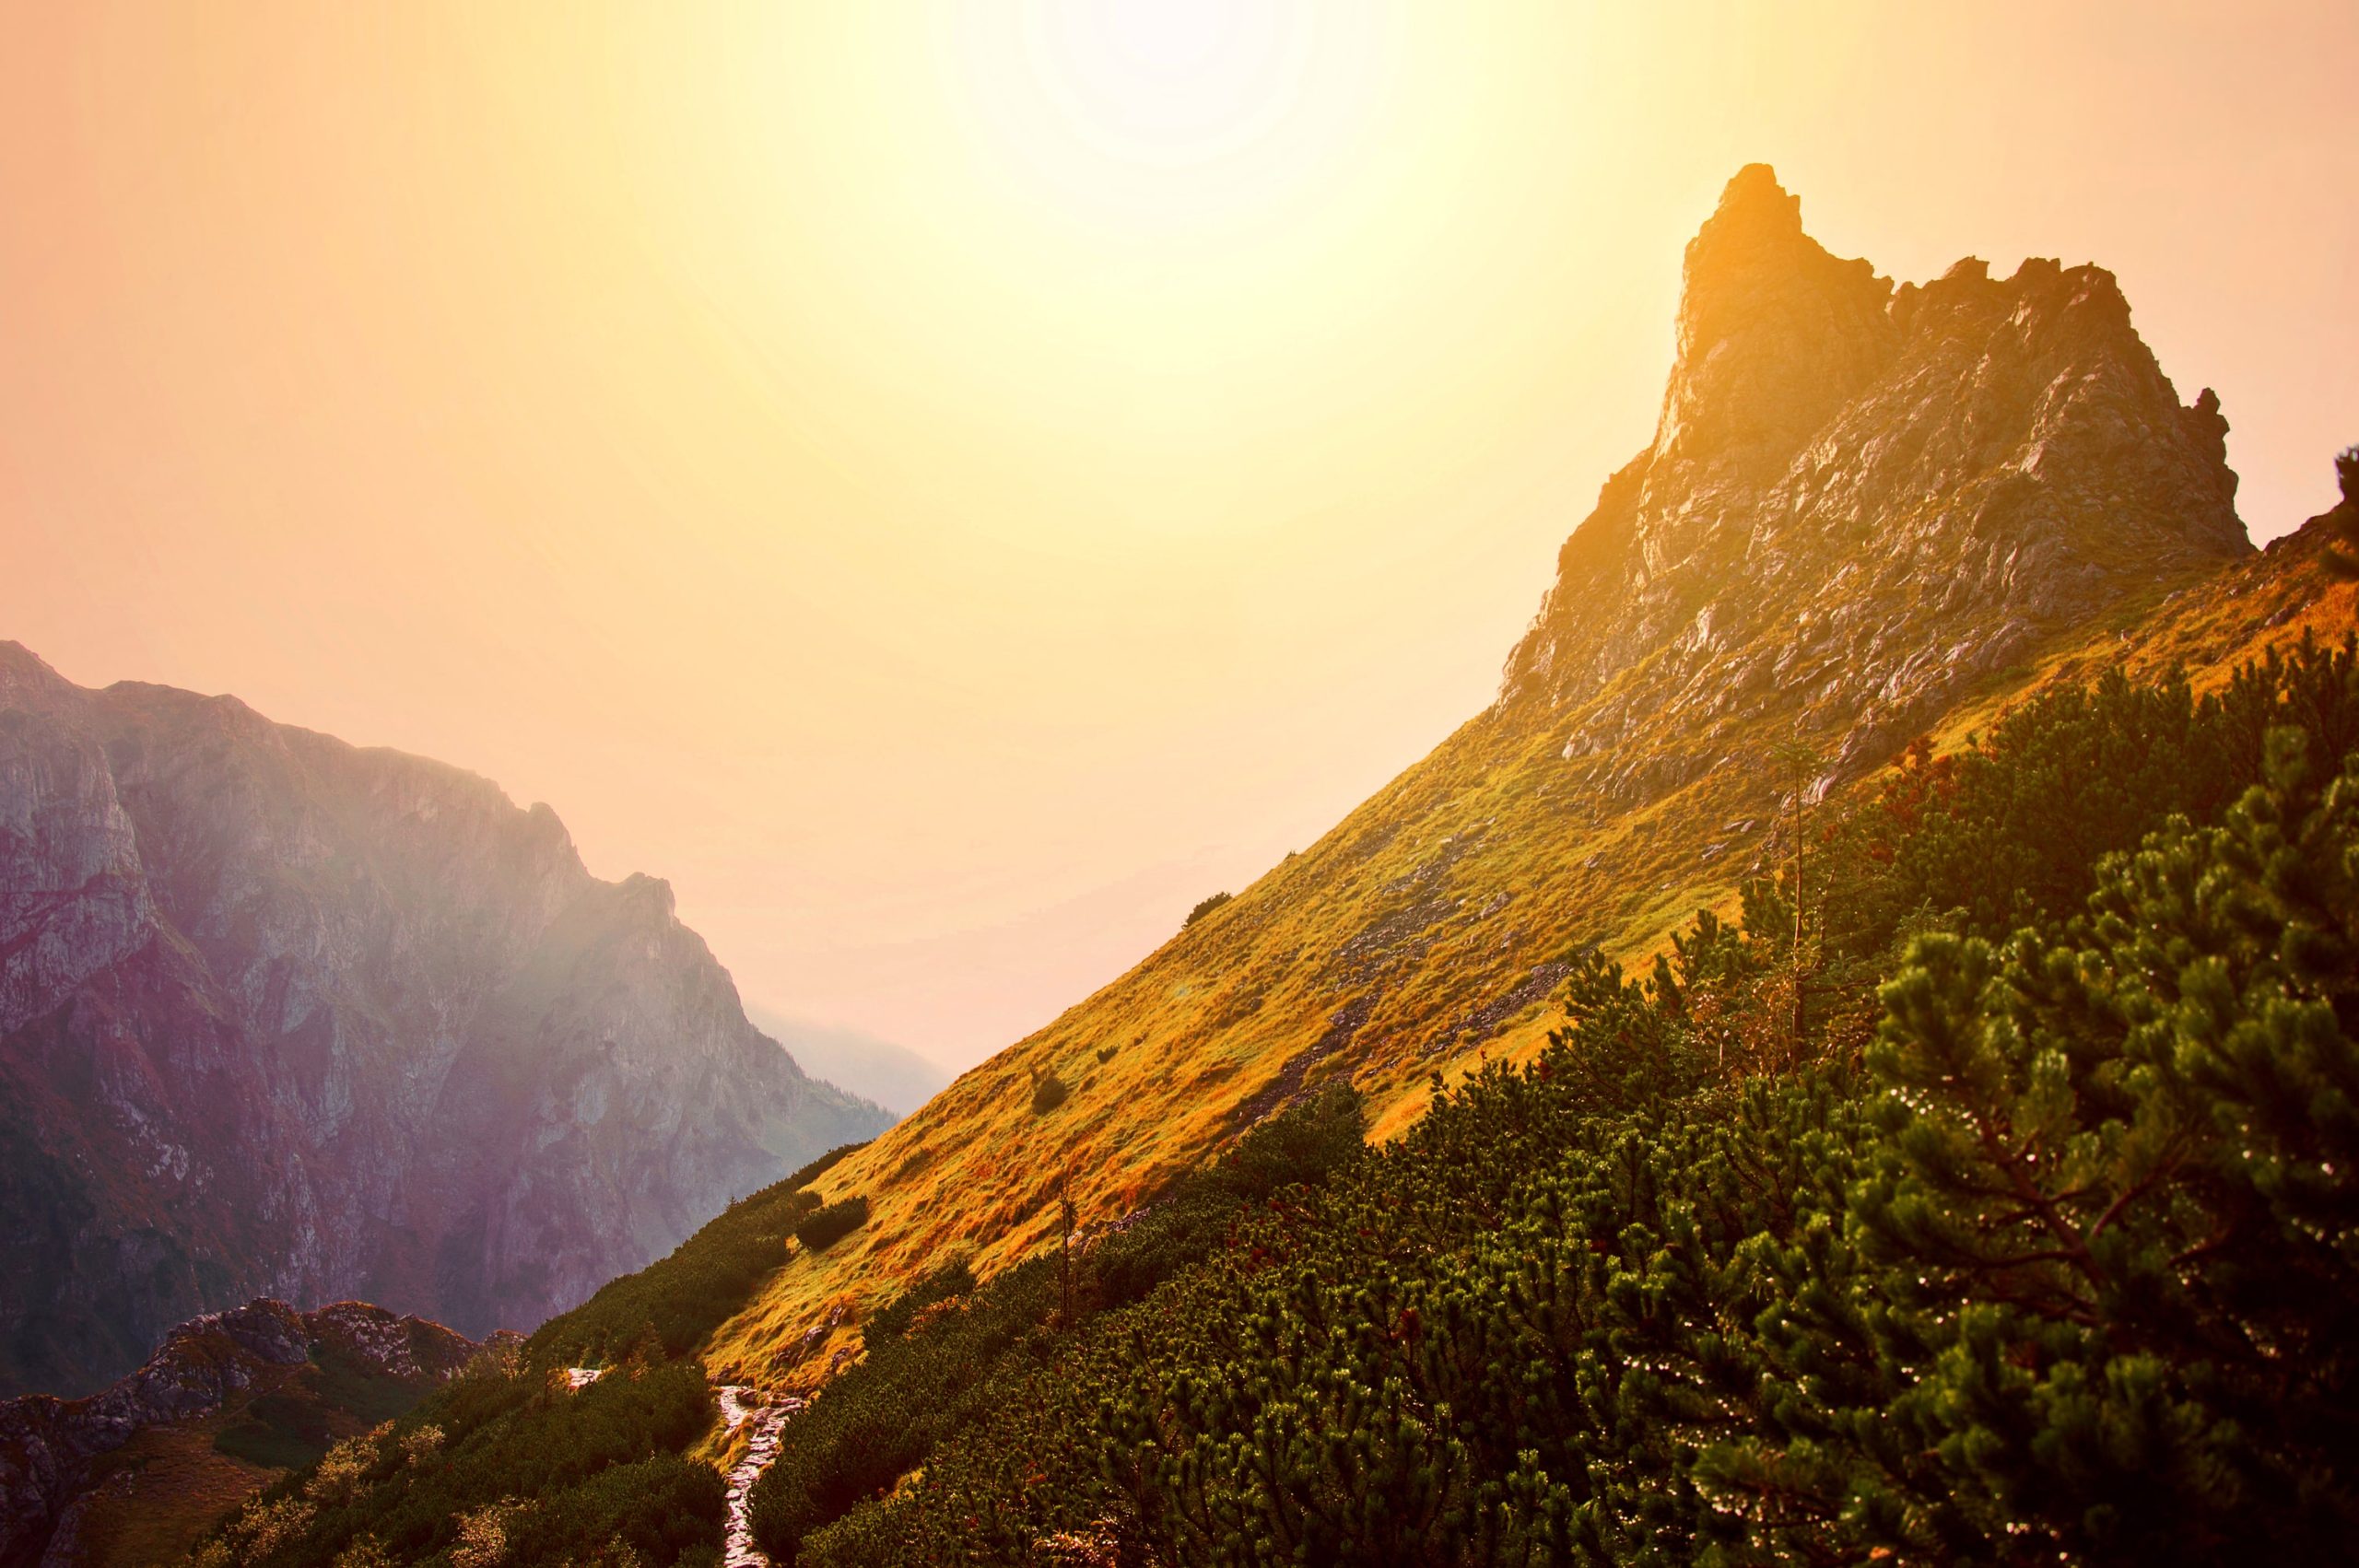 velliangiri-mountains-peaks-of-peace